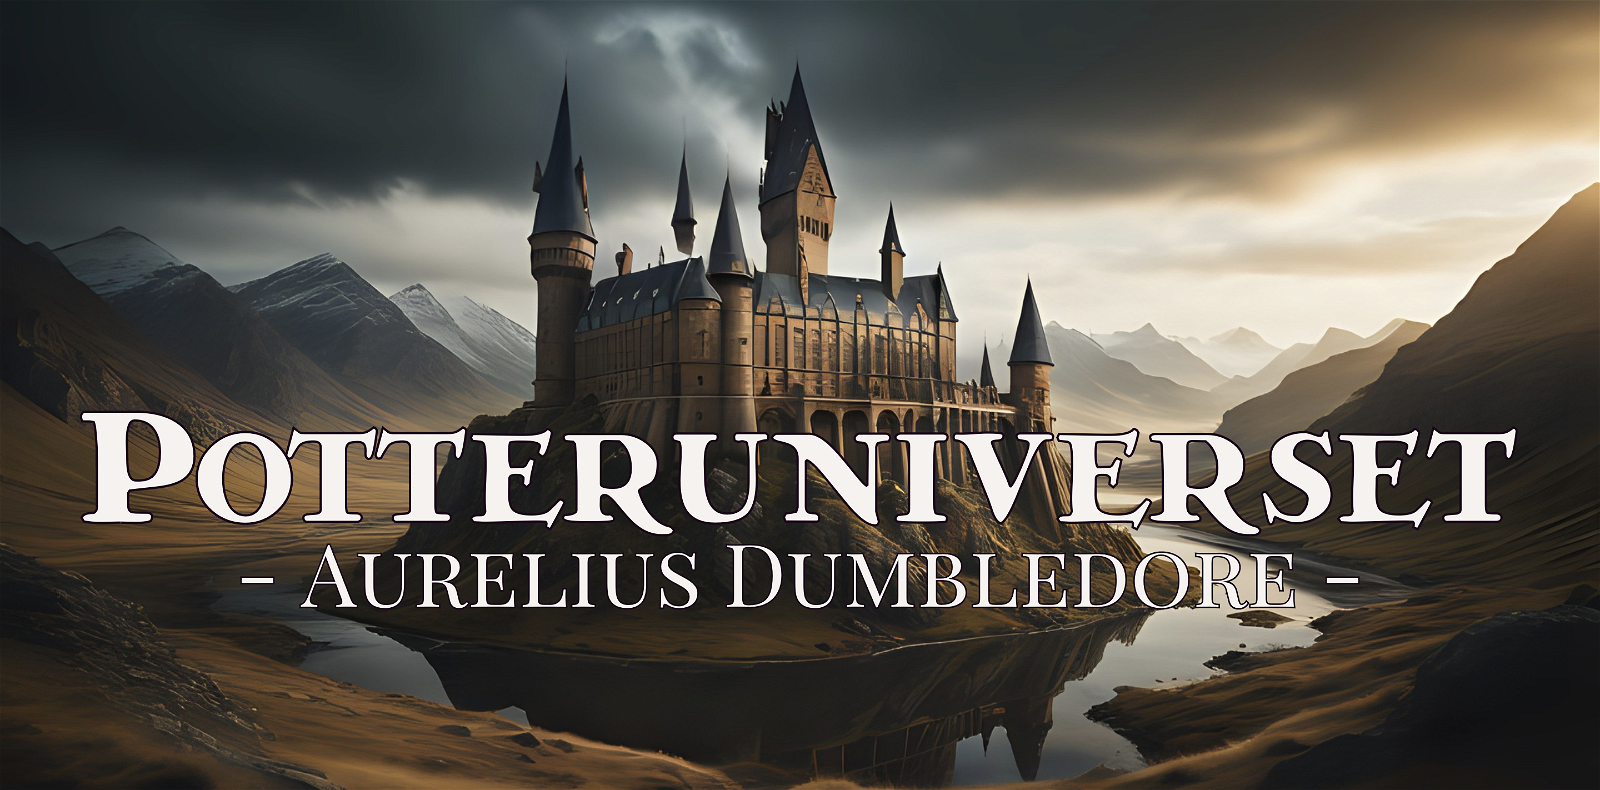 Potteruniverset: Aurelius Dumbledore